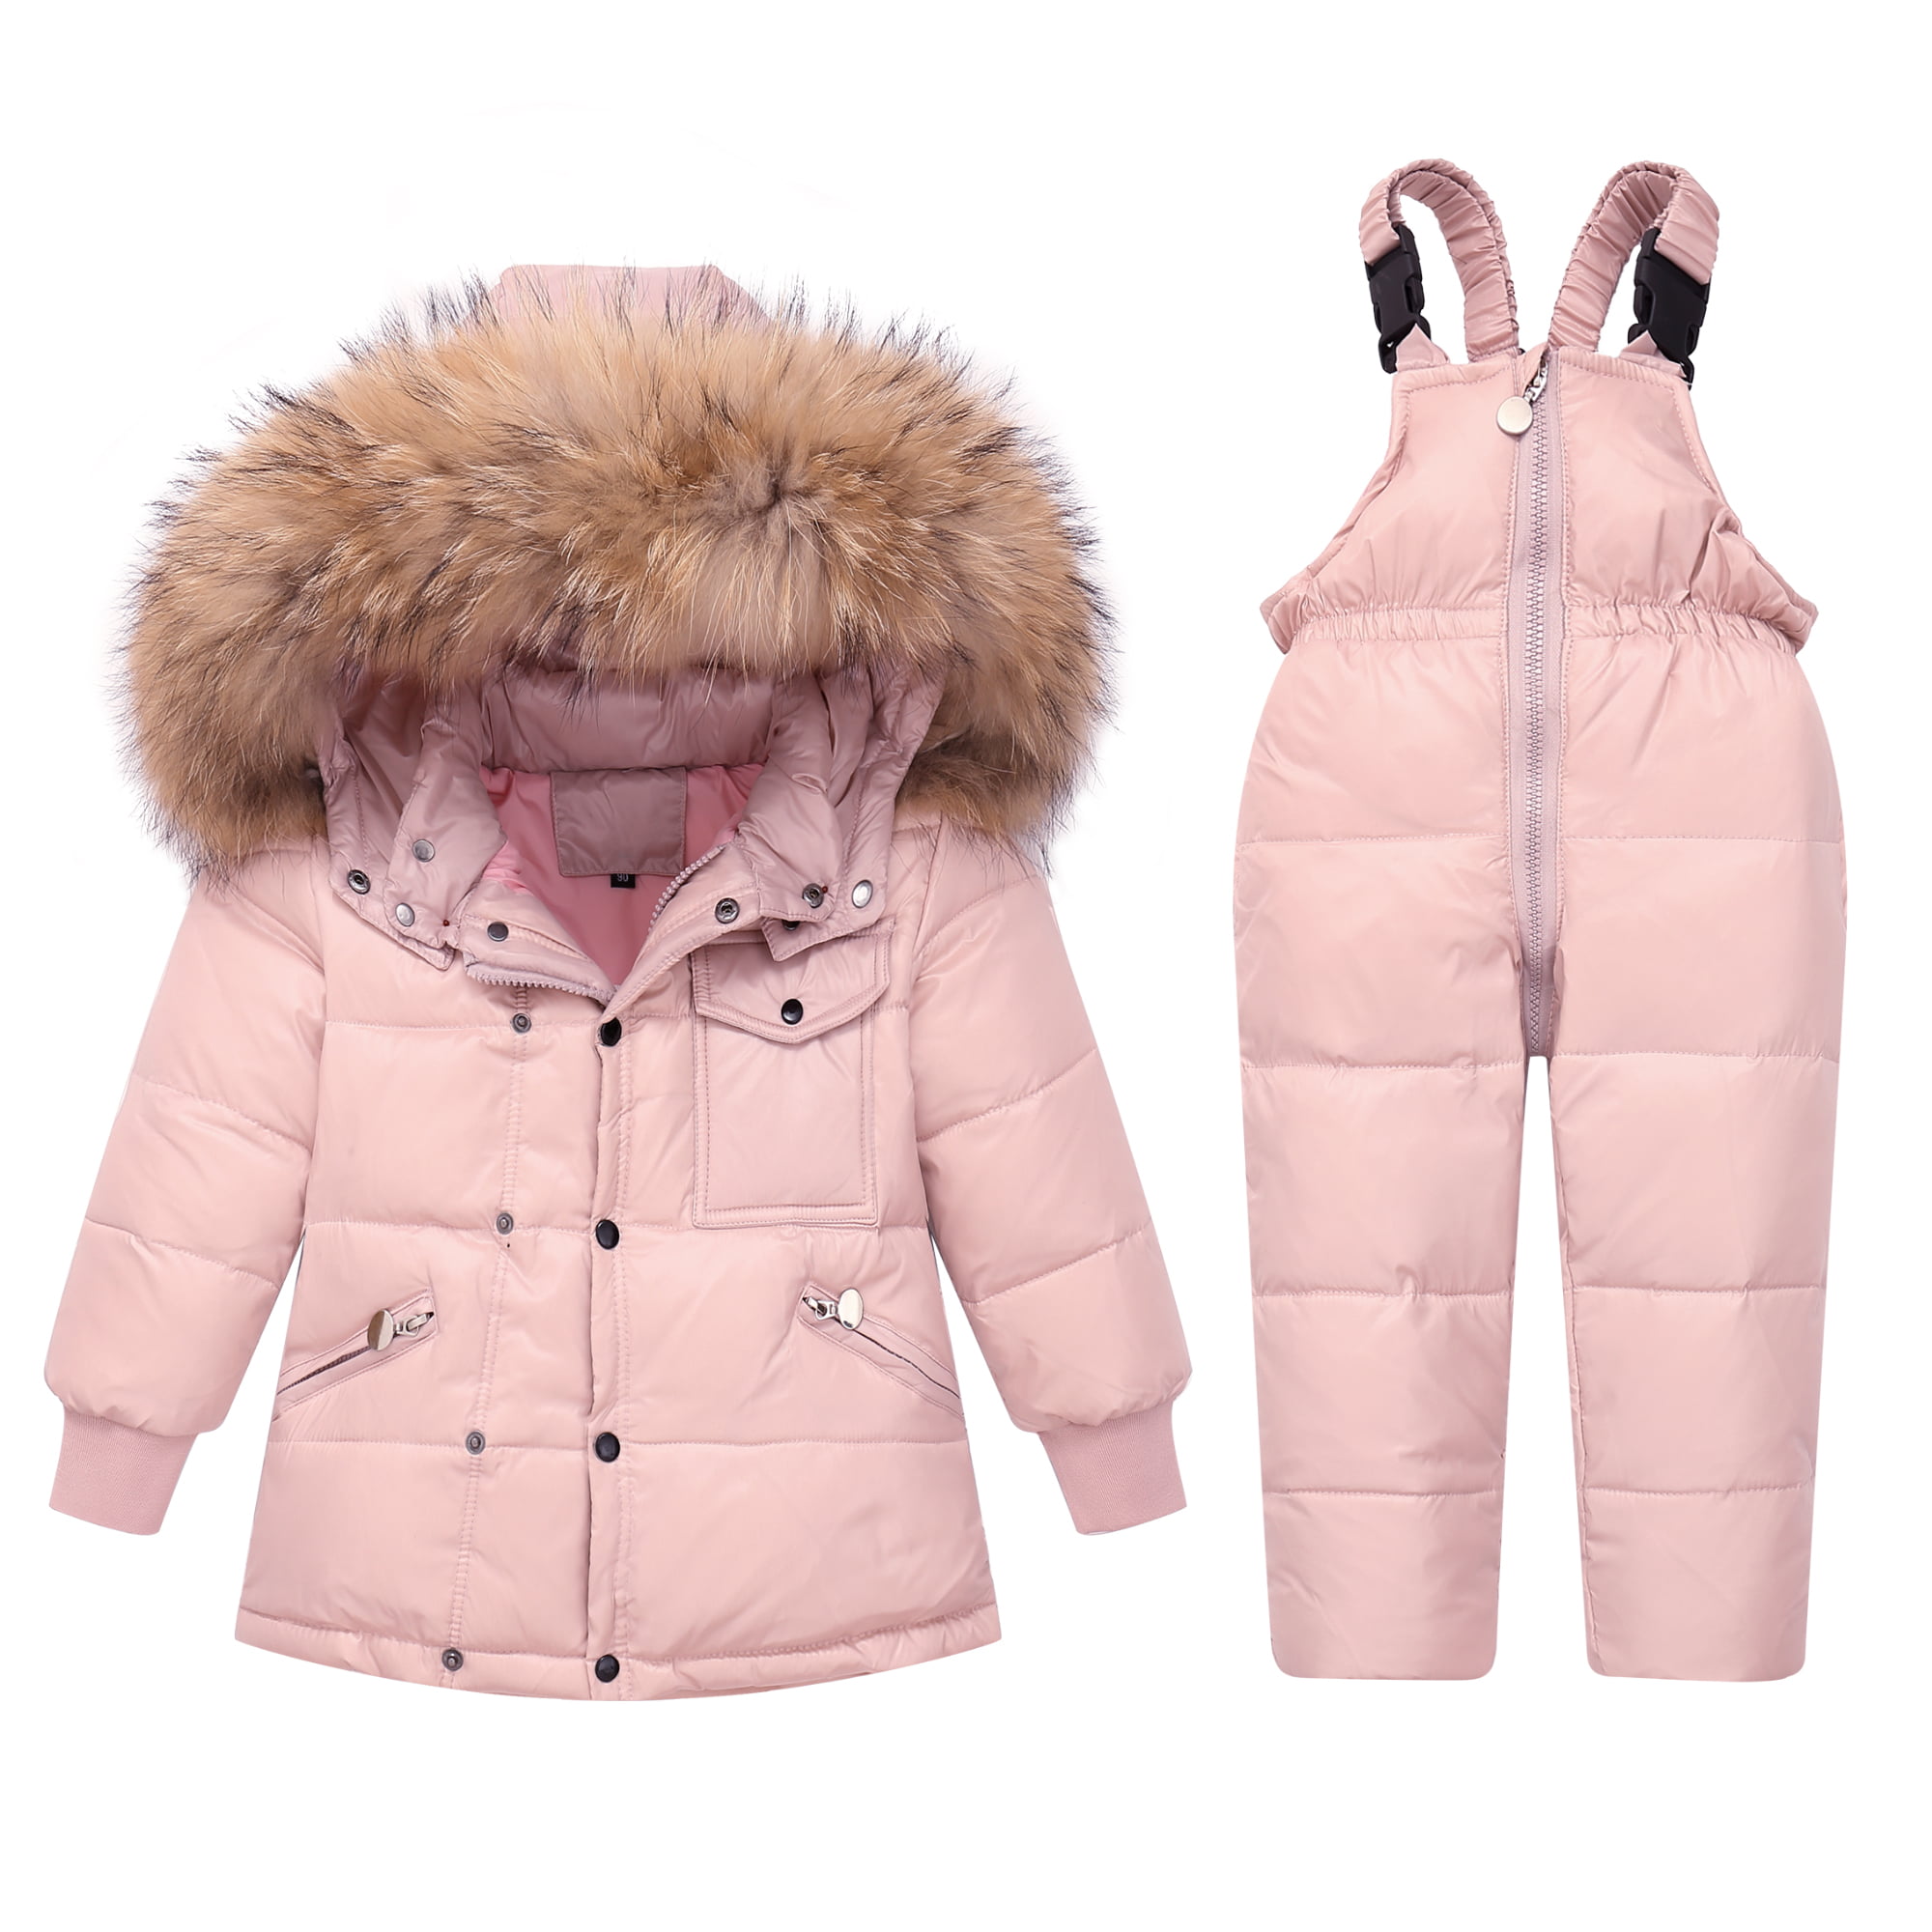 Children Ski Suit Winter Baby Boy Suit Duck Down Jacket Girl Coat Overalls Warm 